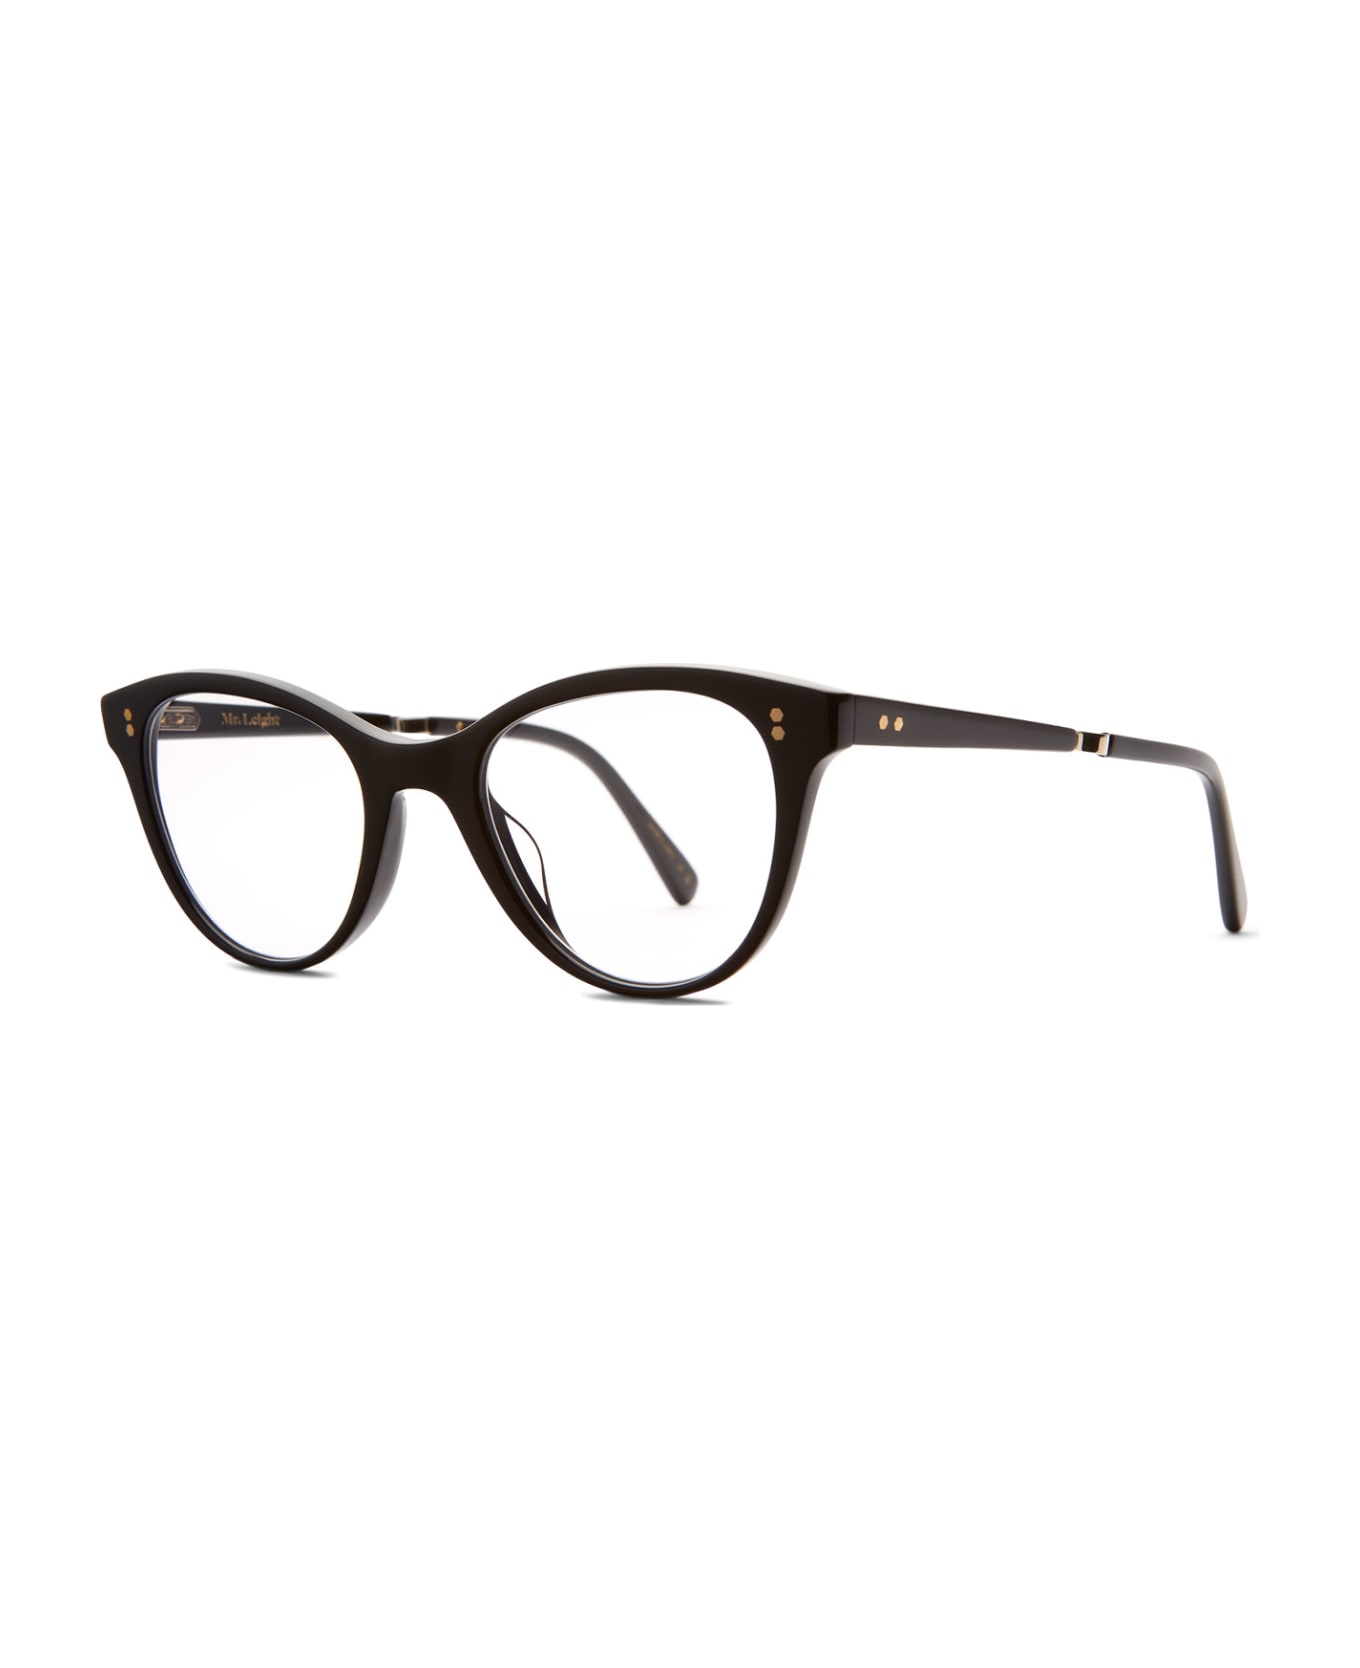 Mr. Leight Taylor C Black-12k White Gold Glasses - Black-12K White Gold アイウェア